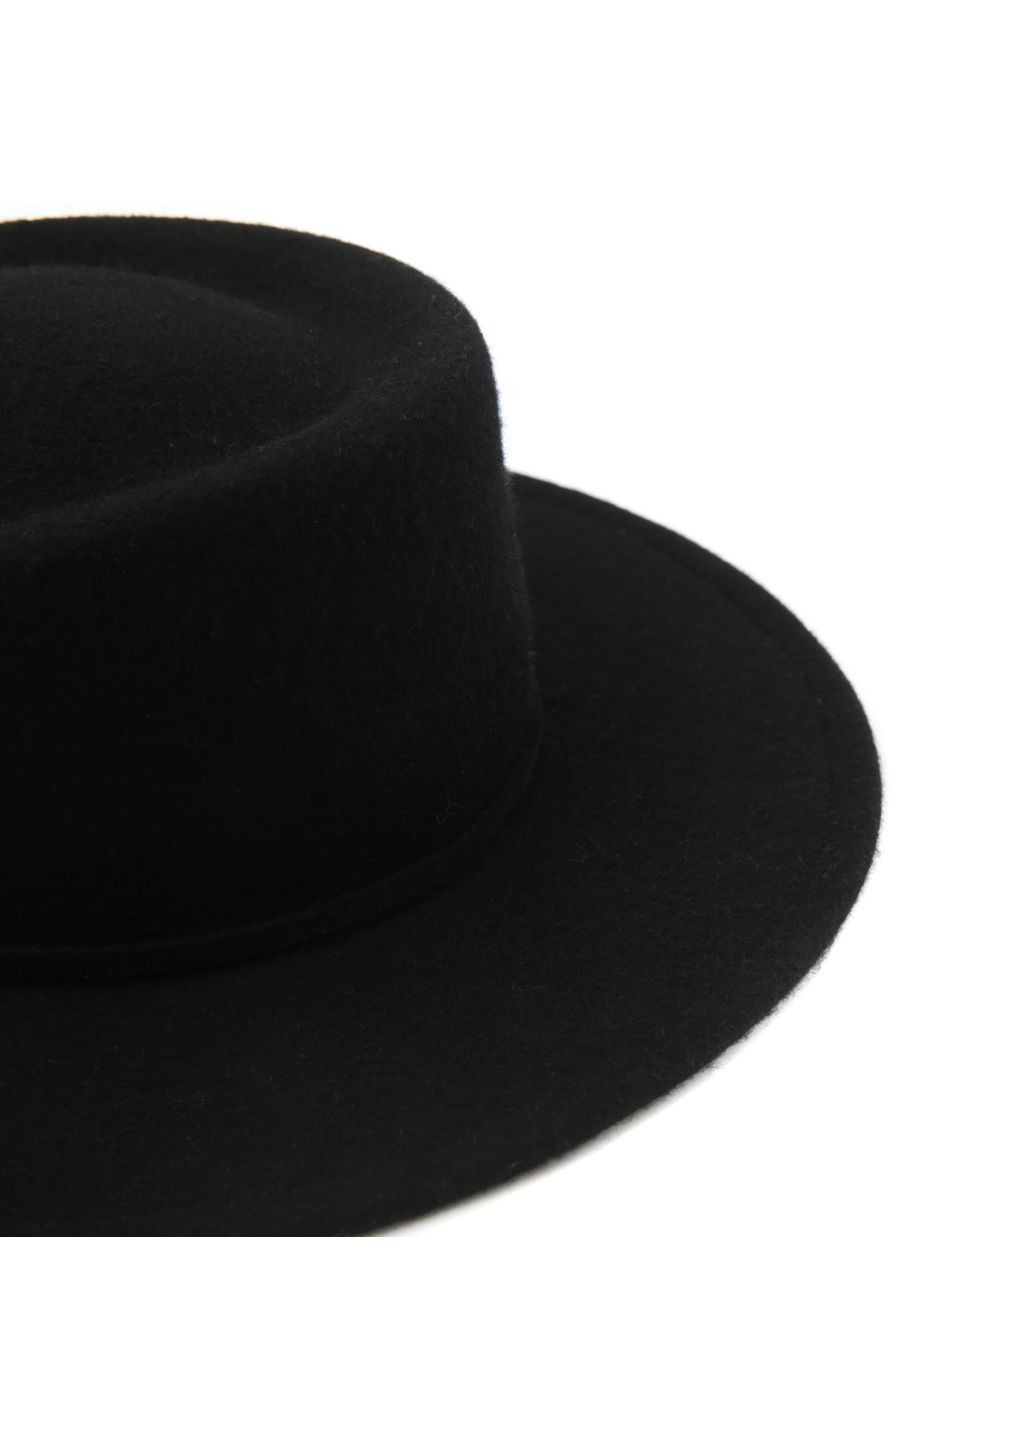 Шляпа канотье женская с серебряной цепочкой и фигурным верхом фетр черная LuckyLOOK 943-040 (289478315)